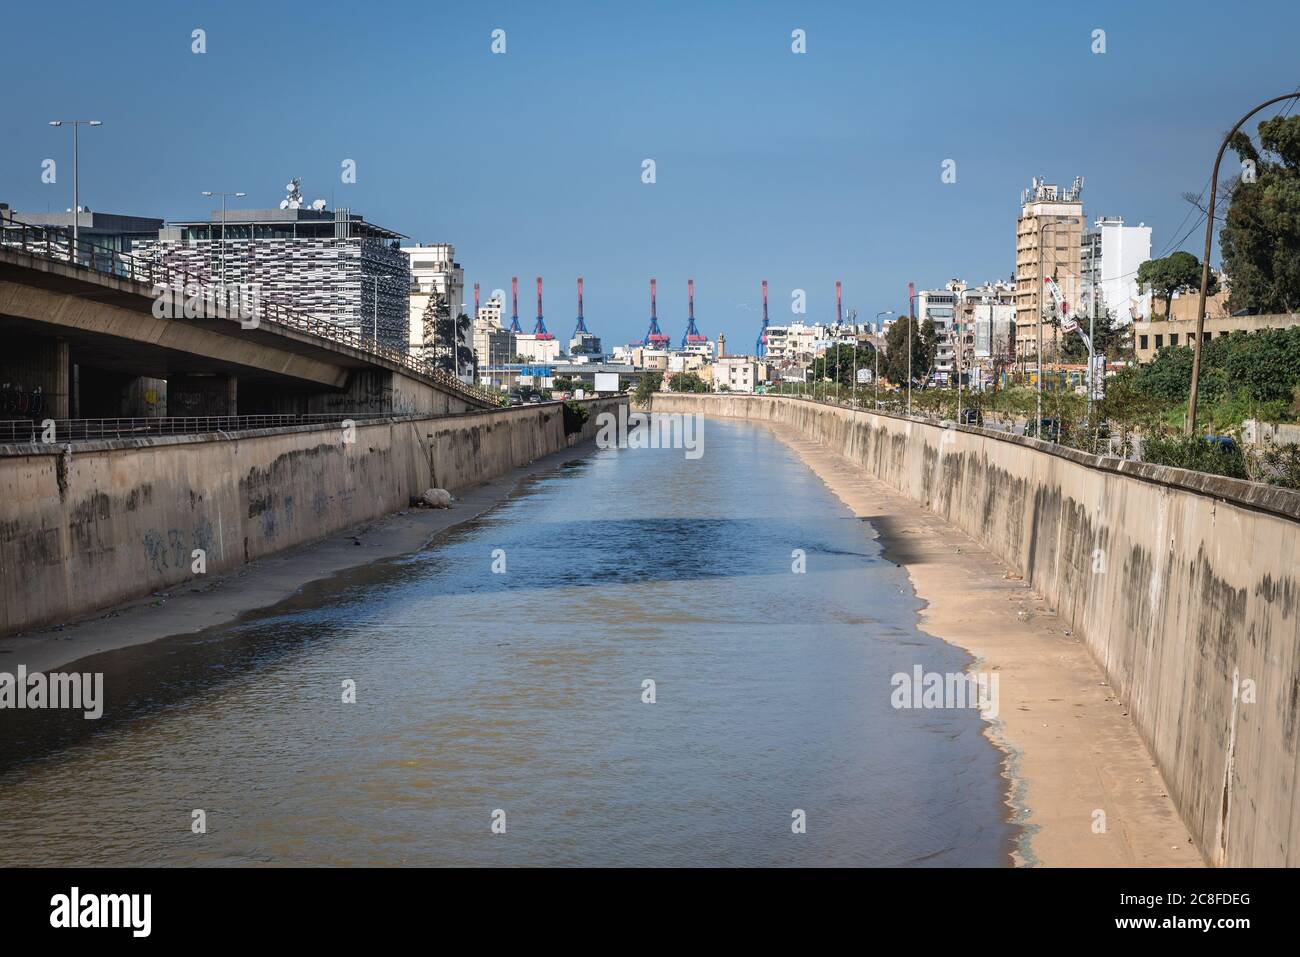 Rivière Beyrouth vue depuis le pont Jisr El Watti entre Beyrouth et la banlieue de Sin el fil Liban Banque D'Images